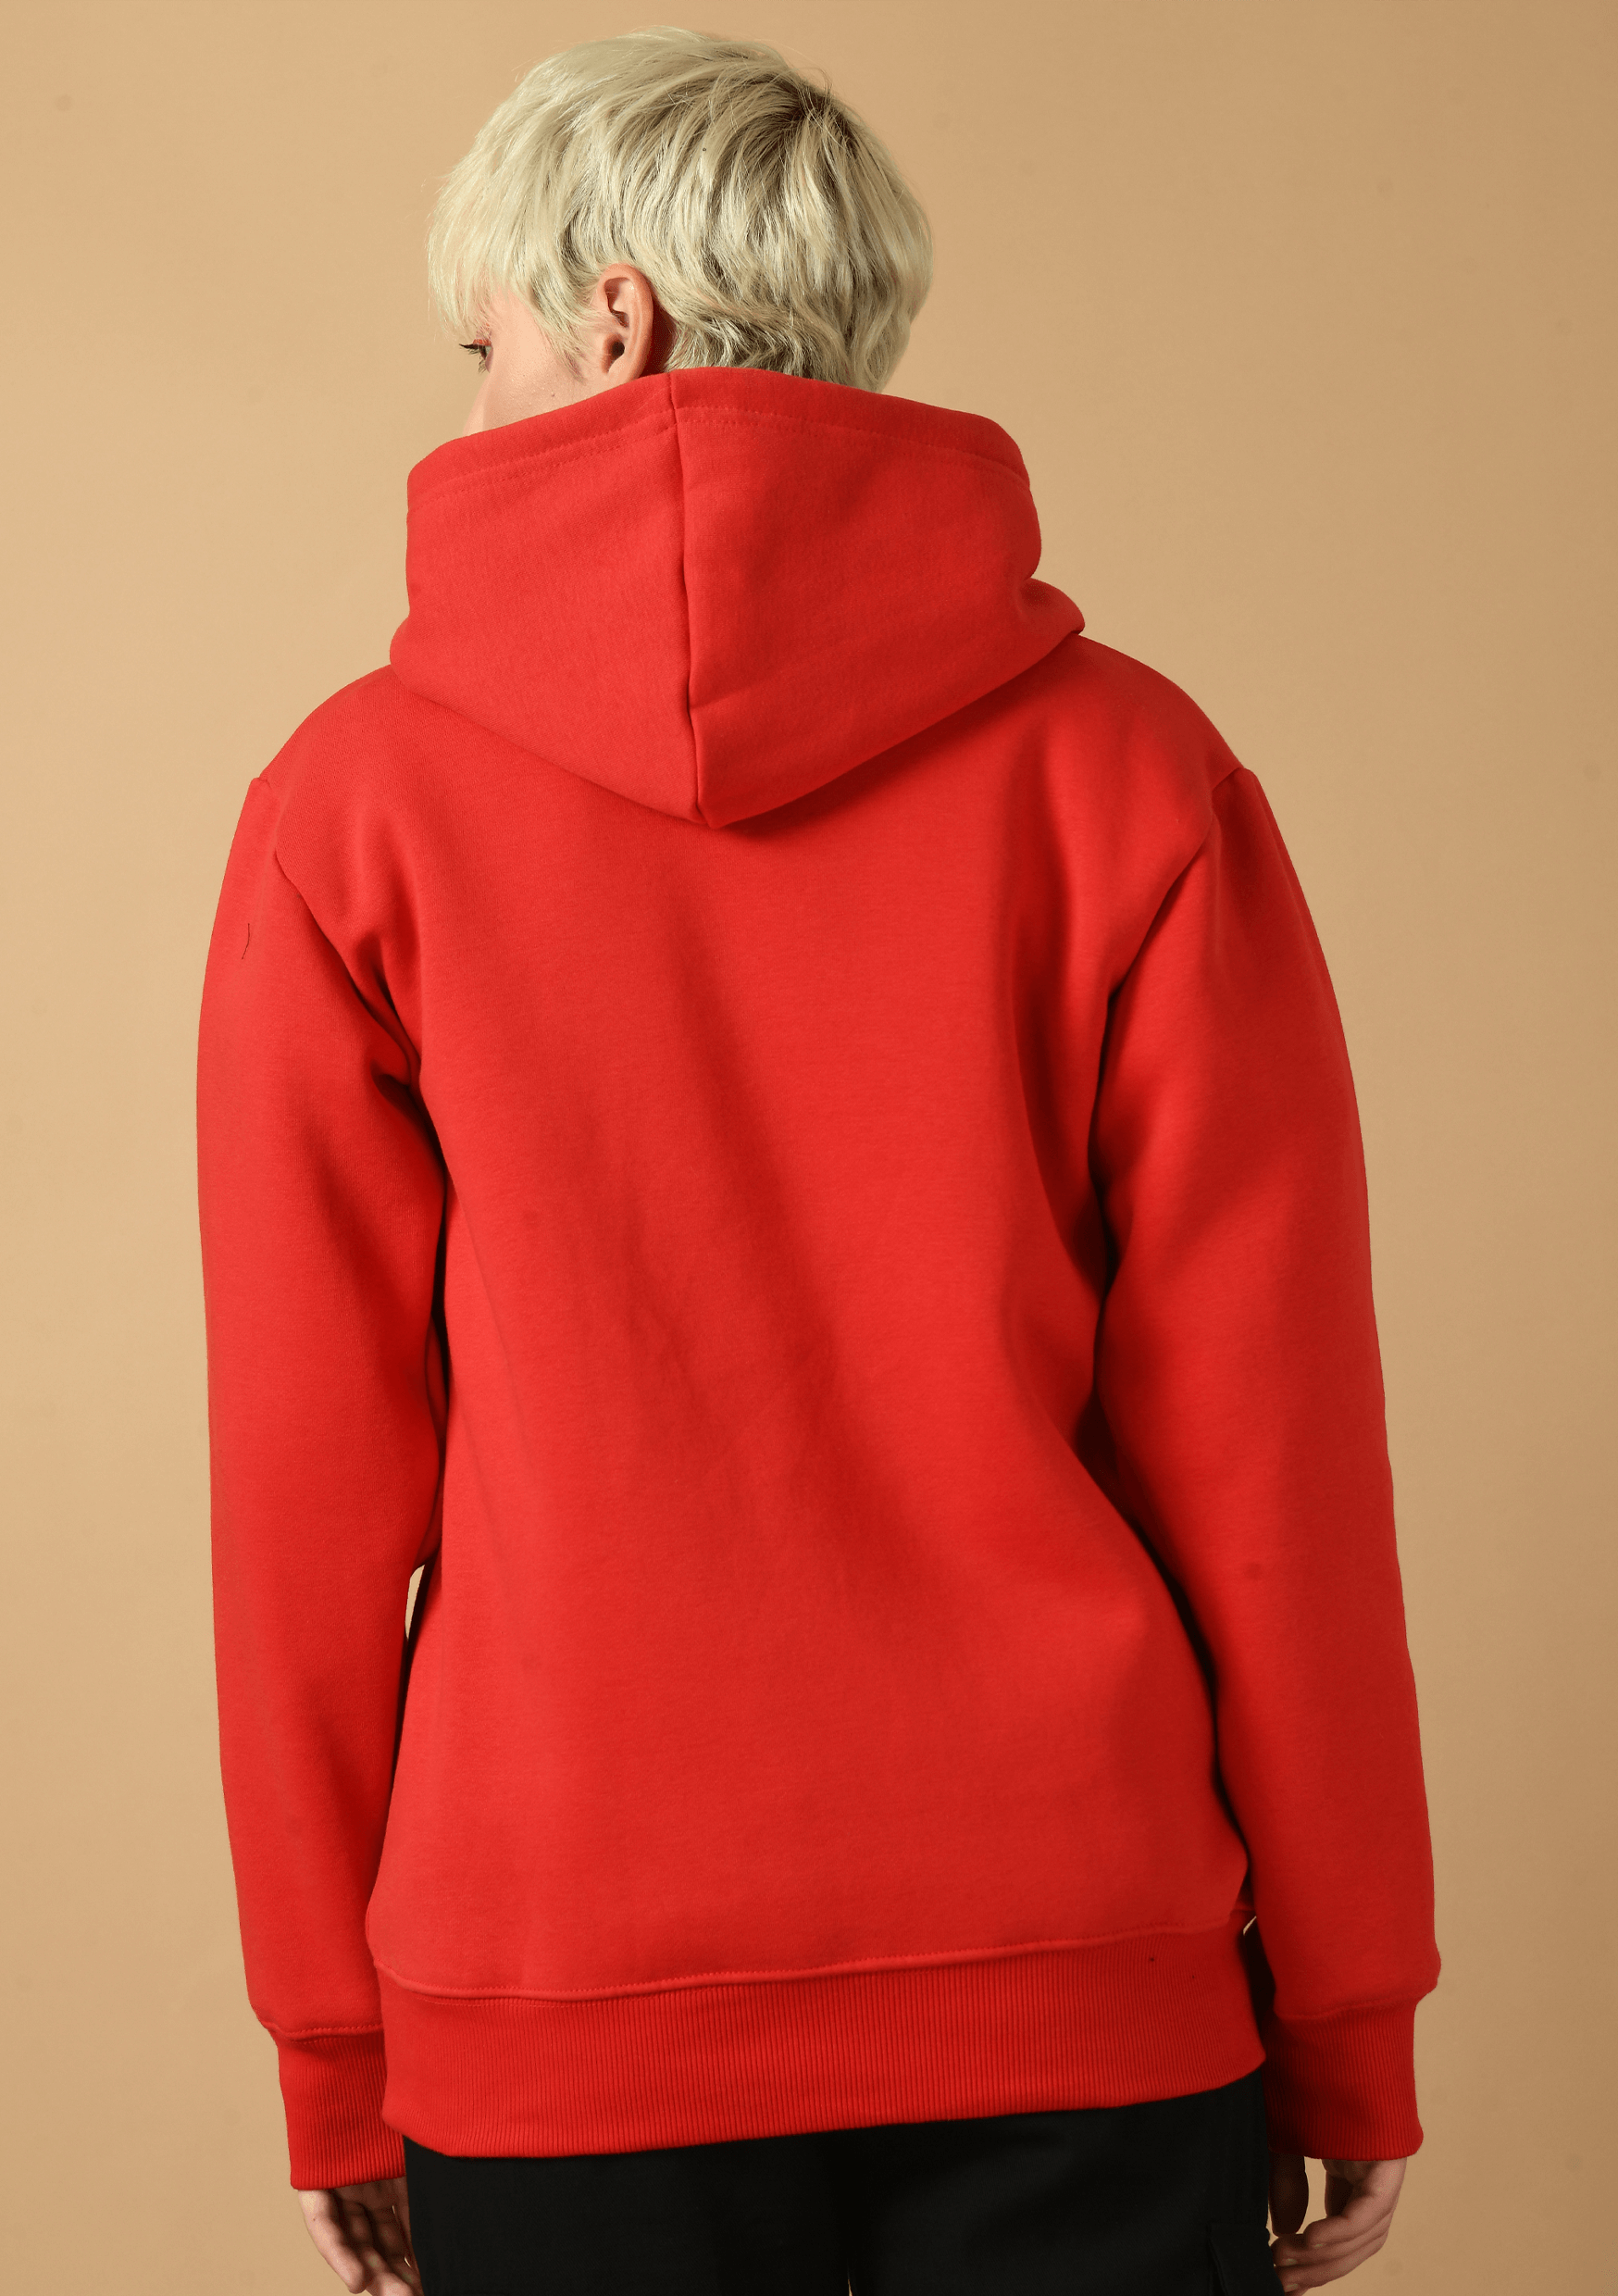 Skeleton printed red hoodie by offmint